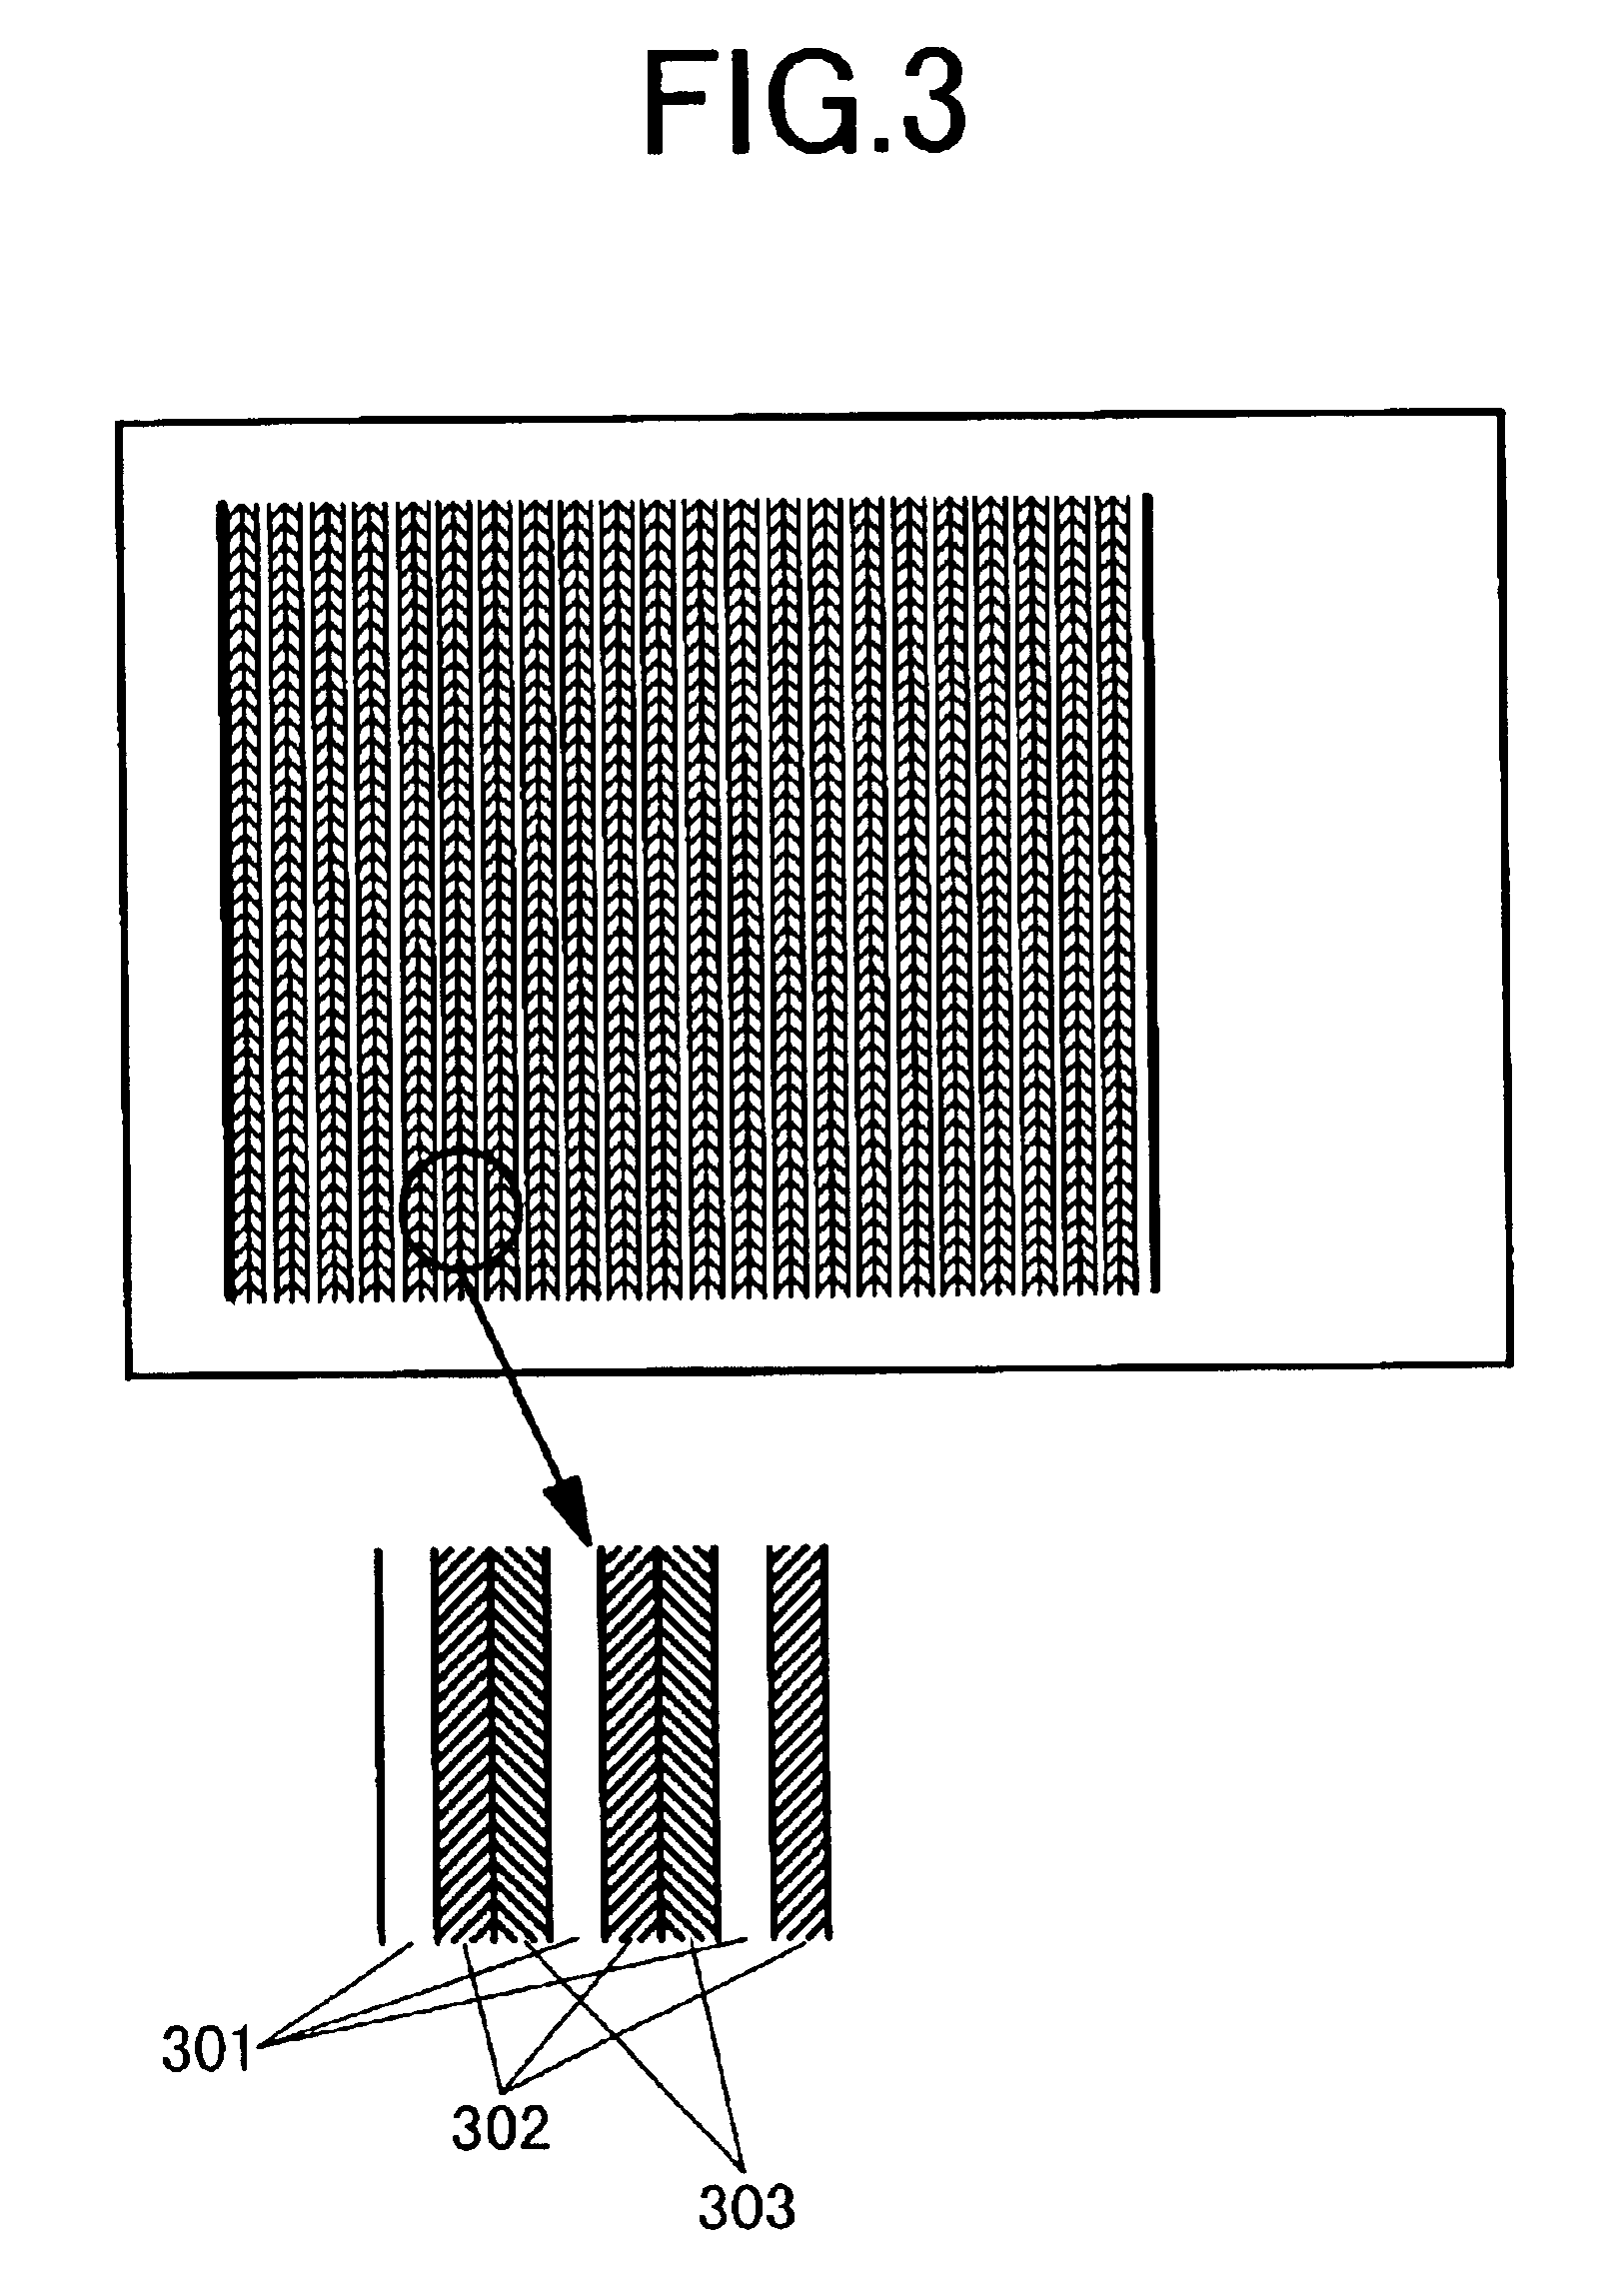 Flat panel display with nanotubes